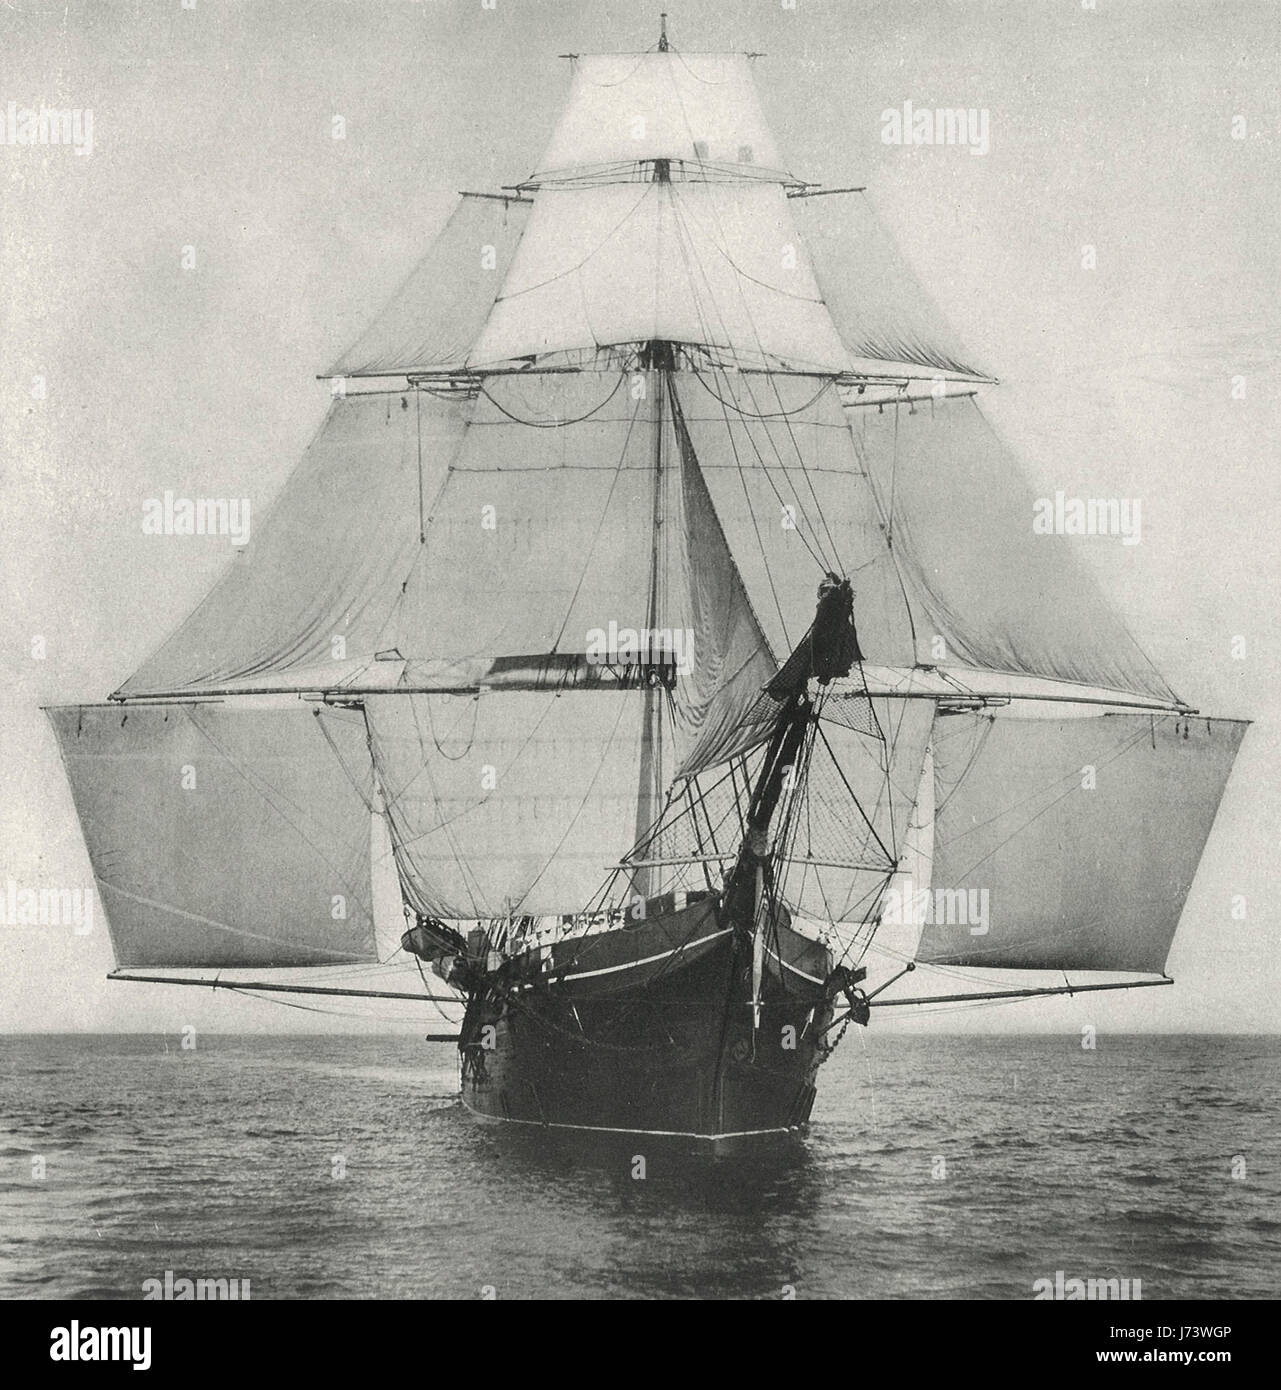 Una vista inusual del Monongahela - velero y barco de entrenamiento Foto de stock